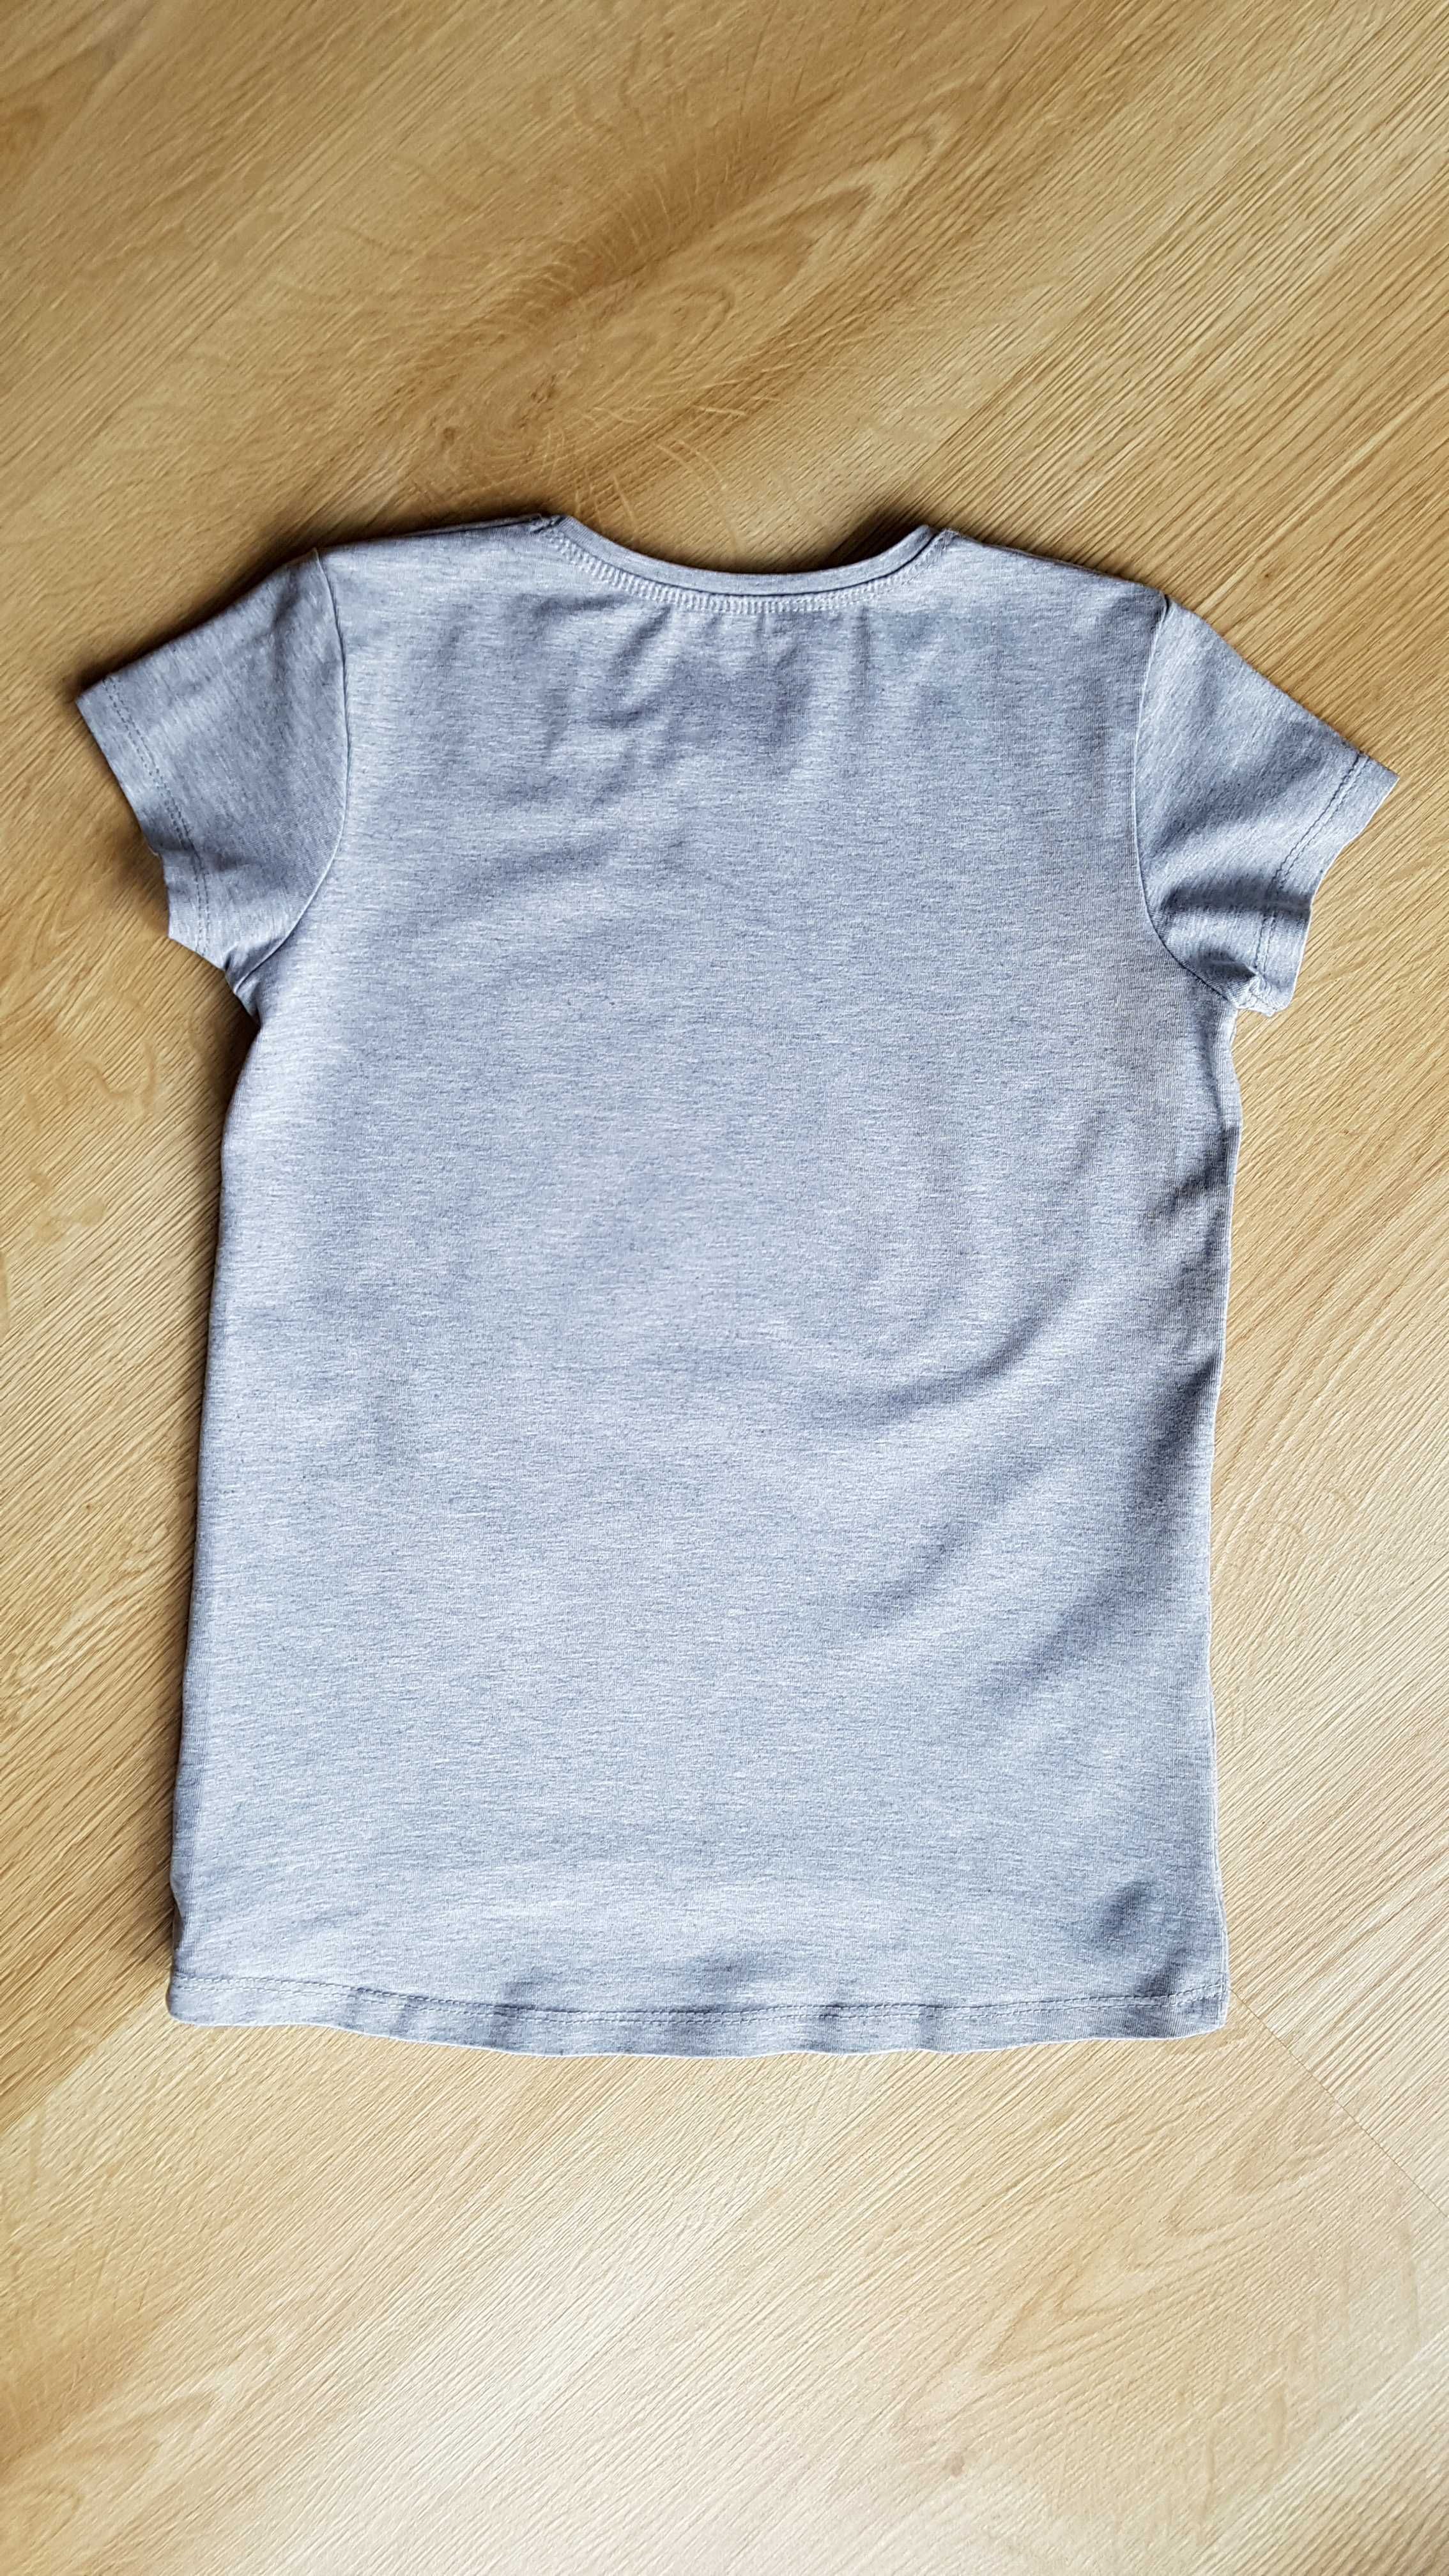 Koszulka, bluzka polskiej firmy aipi - rozm. 140